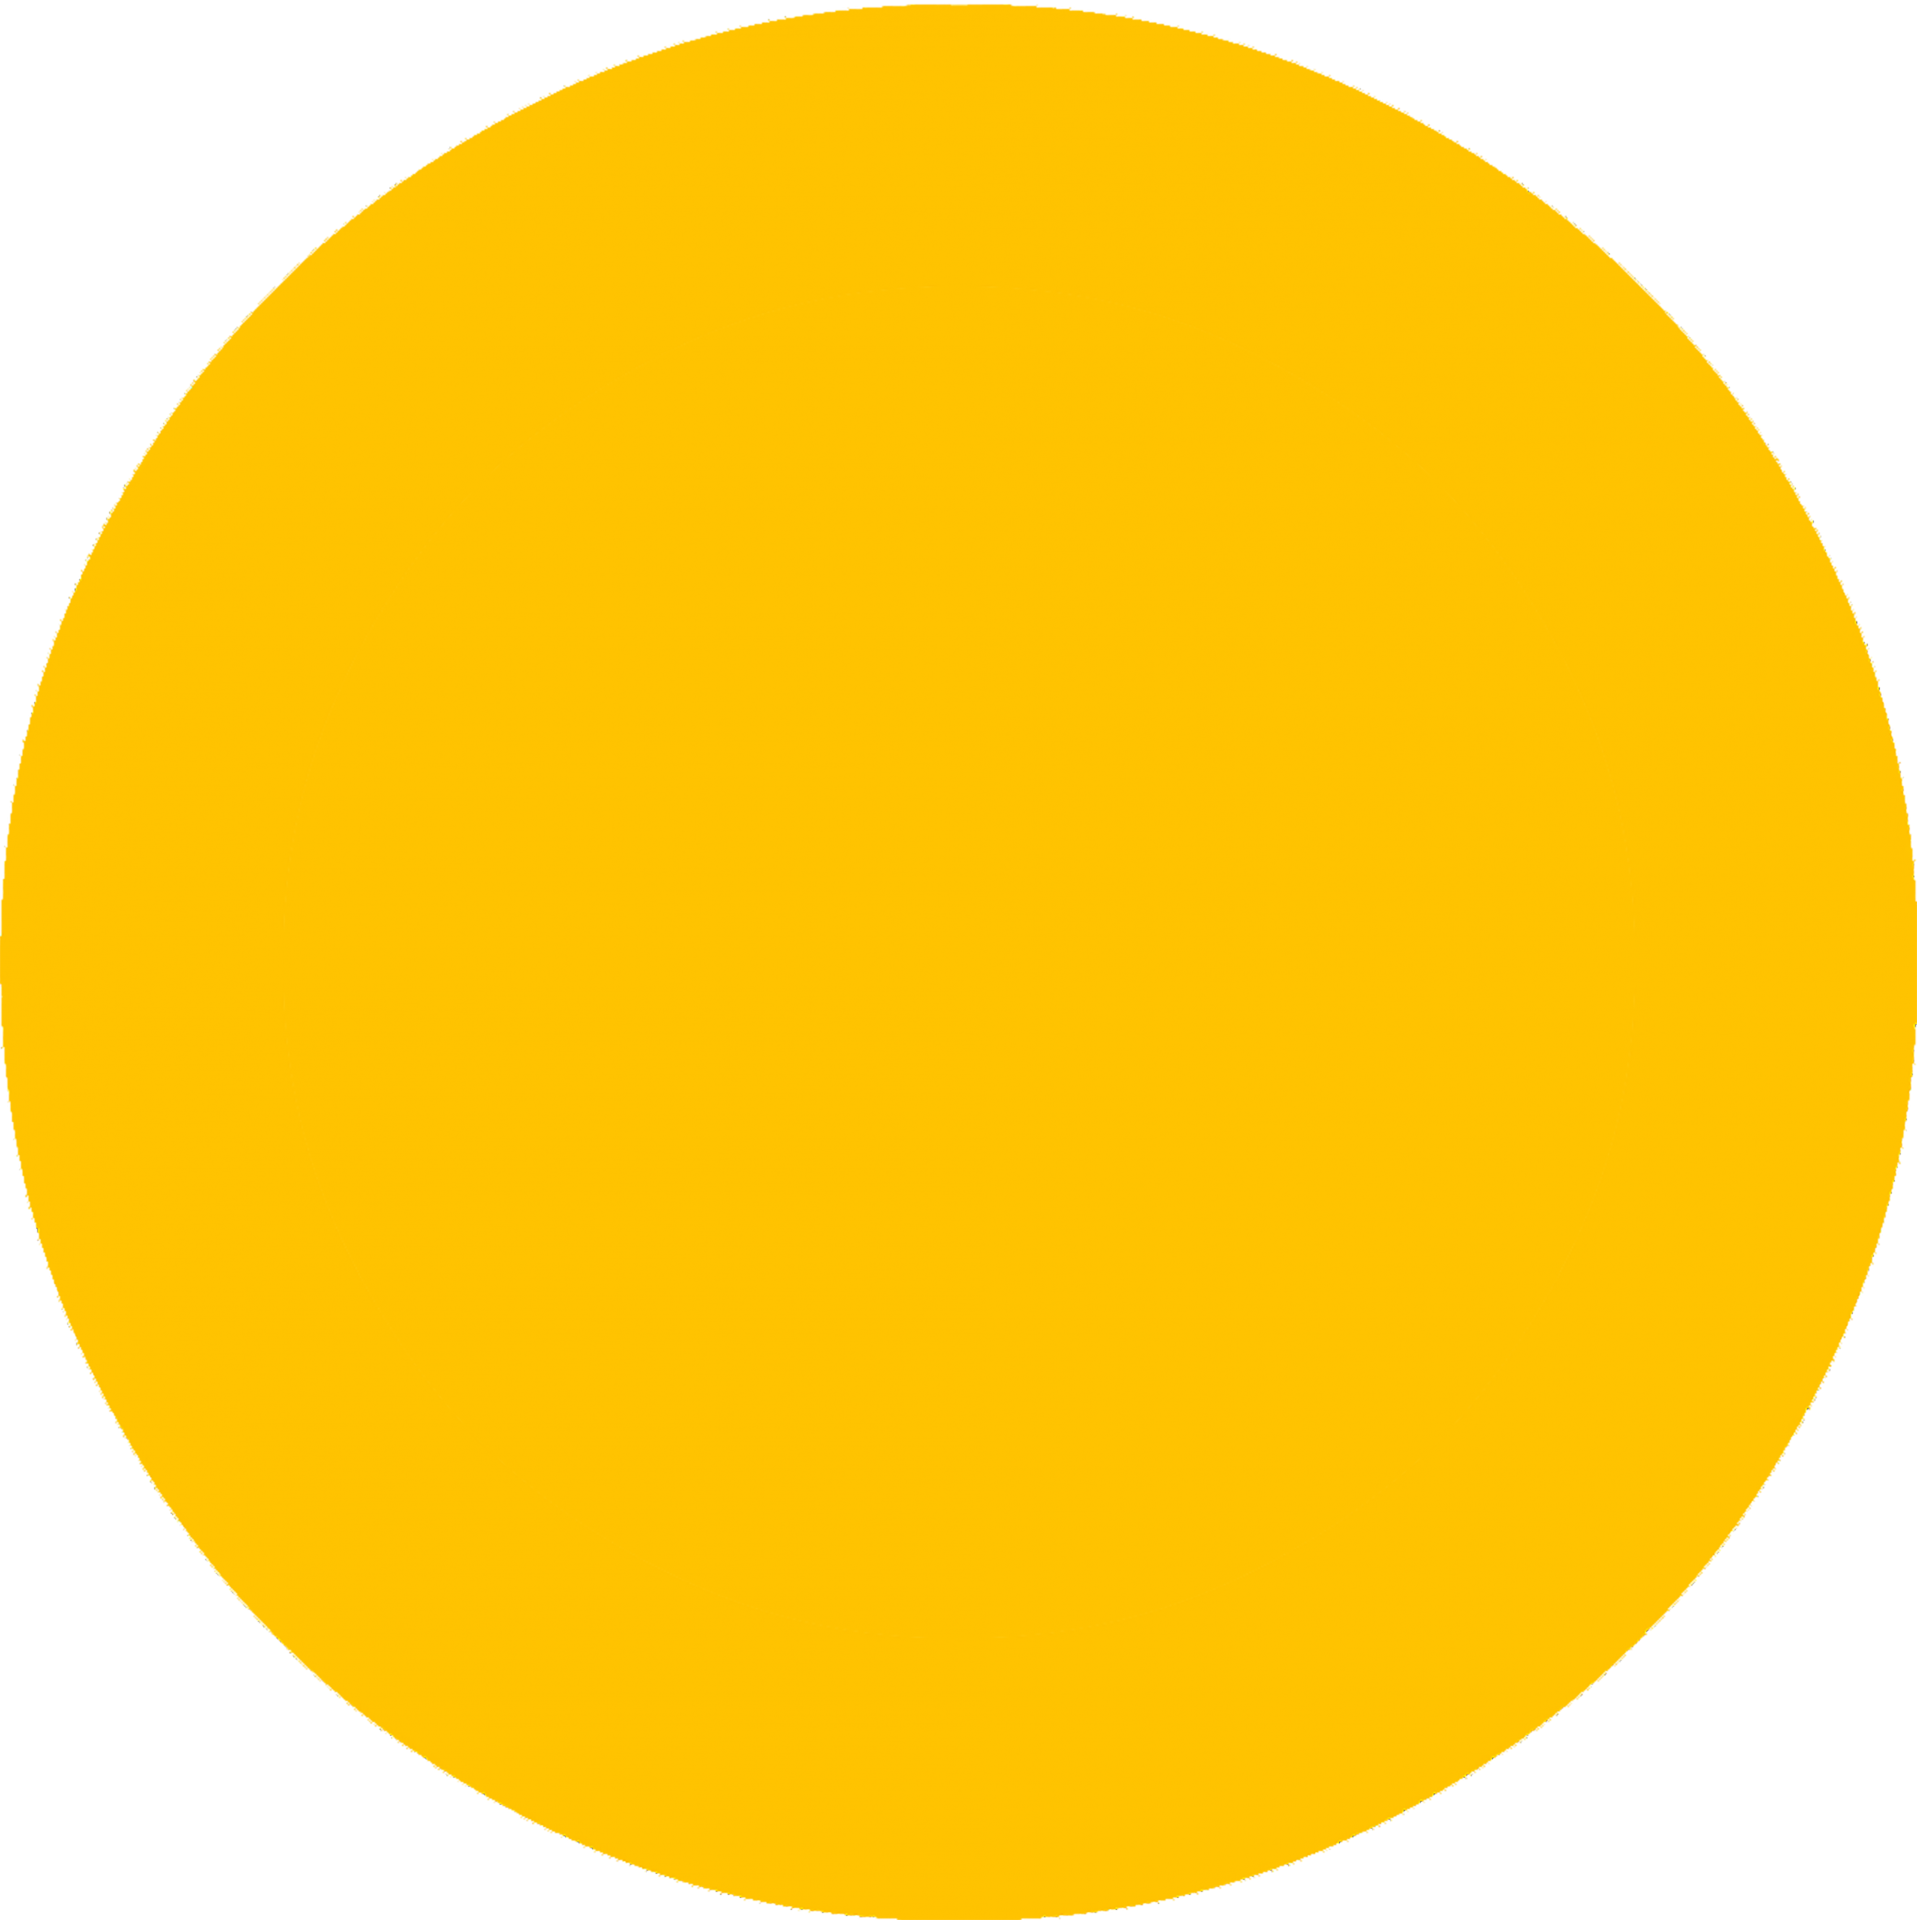 Круг на прозрачном фоне картинки для детей. Желтый круг. Желтый кружок. Желтые кружочки. Желтый круг без фона.